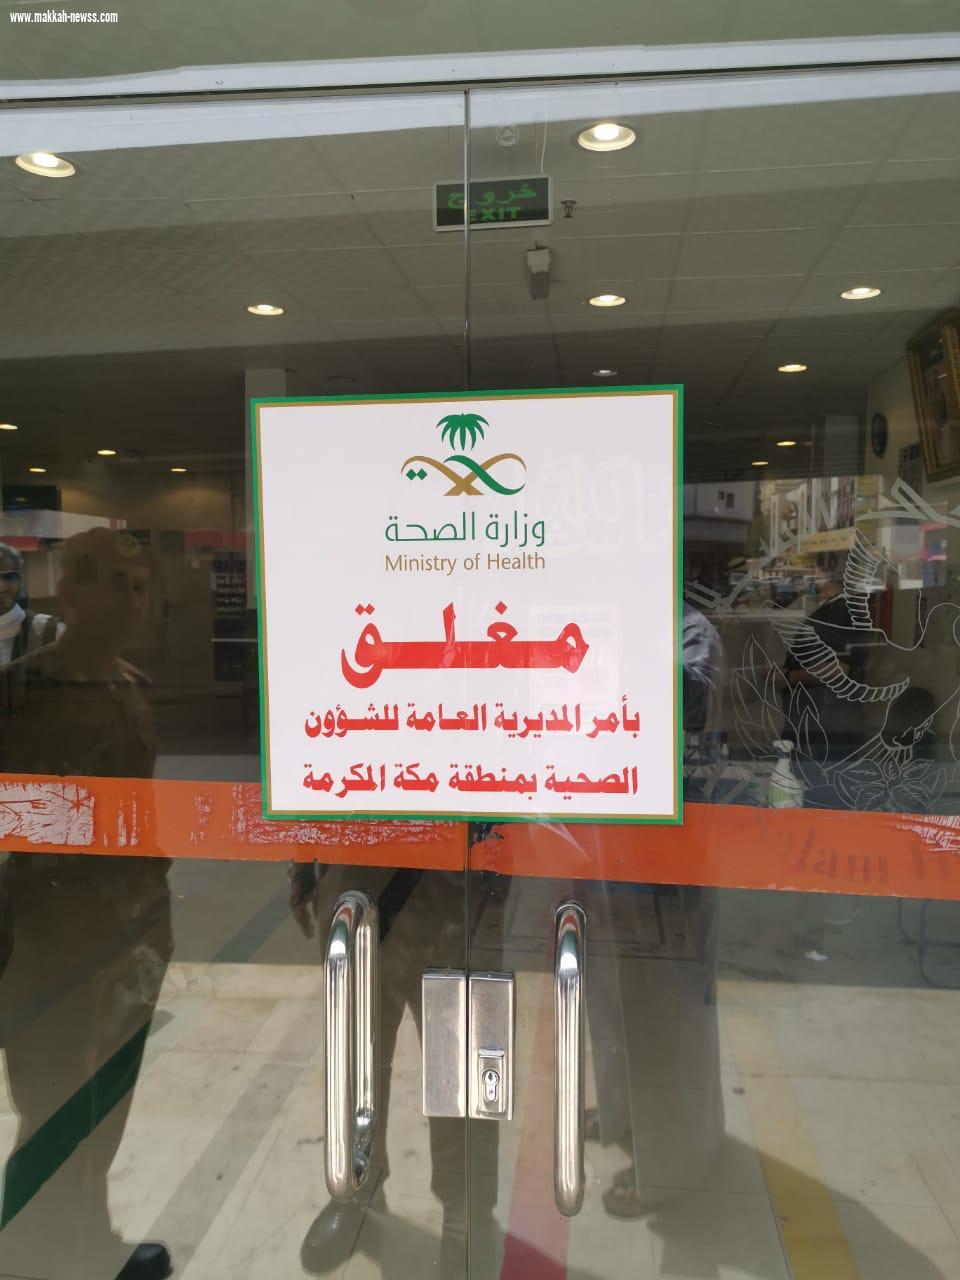 صحة مكة مايتداول بخصوص إغلاق مستشفى بمكة عاري من الصحة 